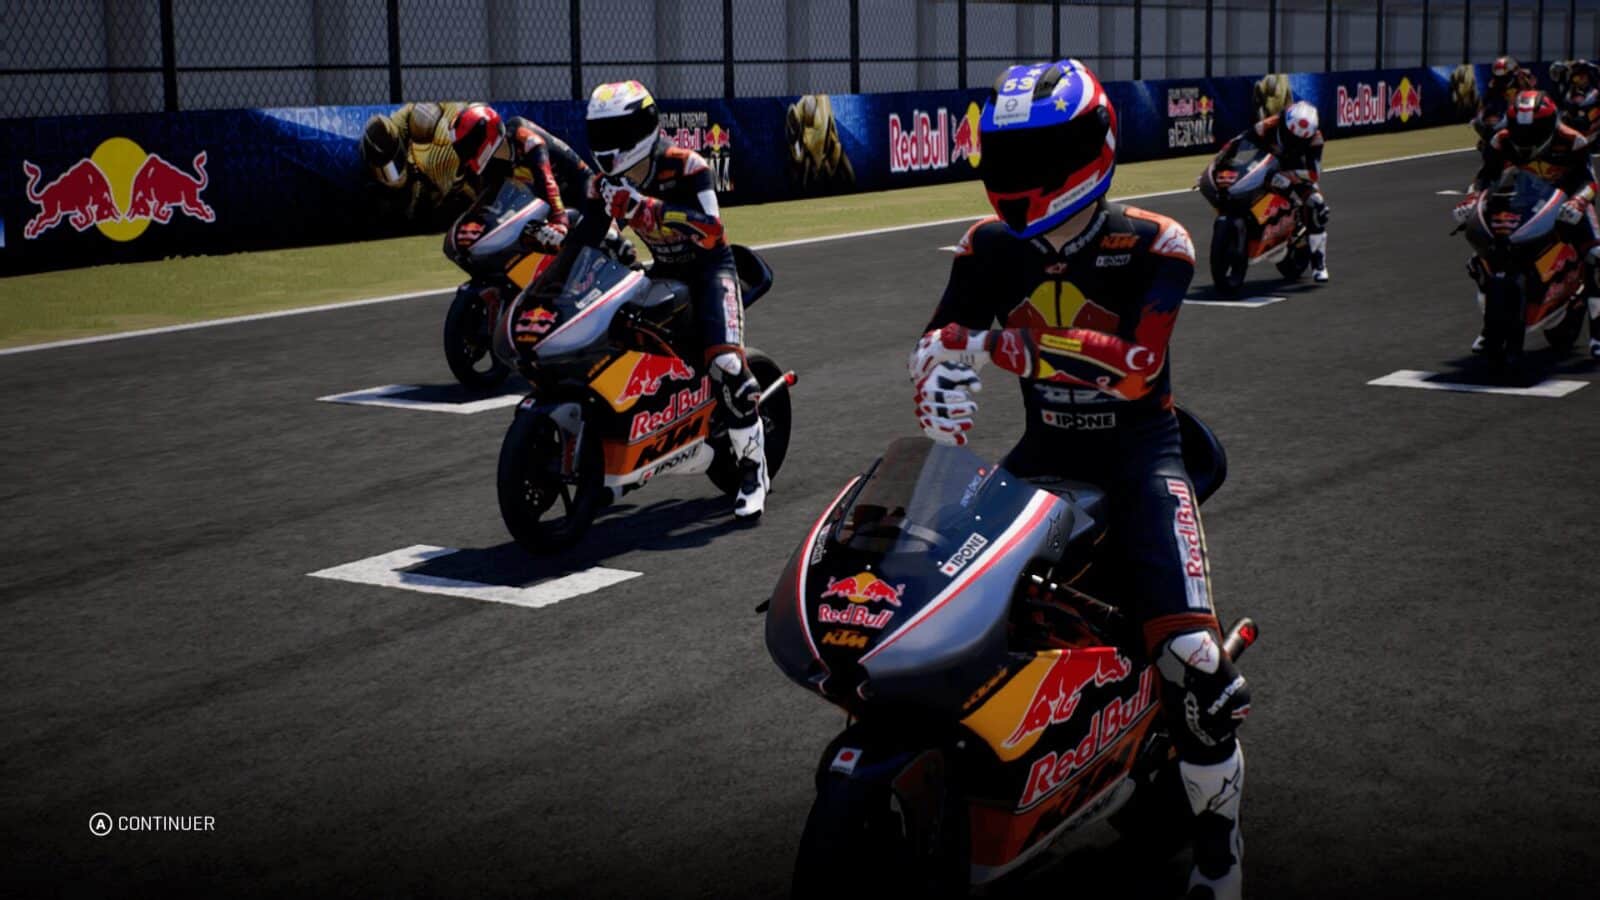 MotoGP 18 Kresys MotoGP18 20180908 10 14 53 MotoGP 18 – La simulation moto par excellence ? gaming